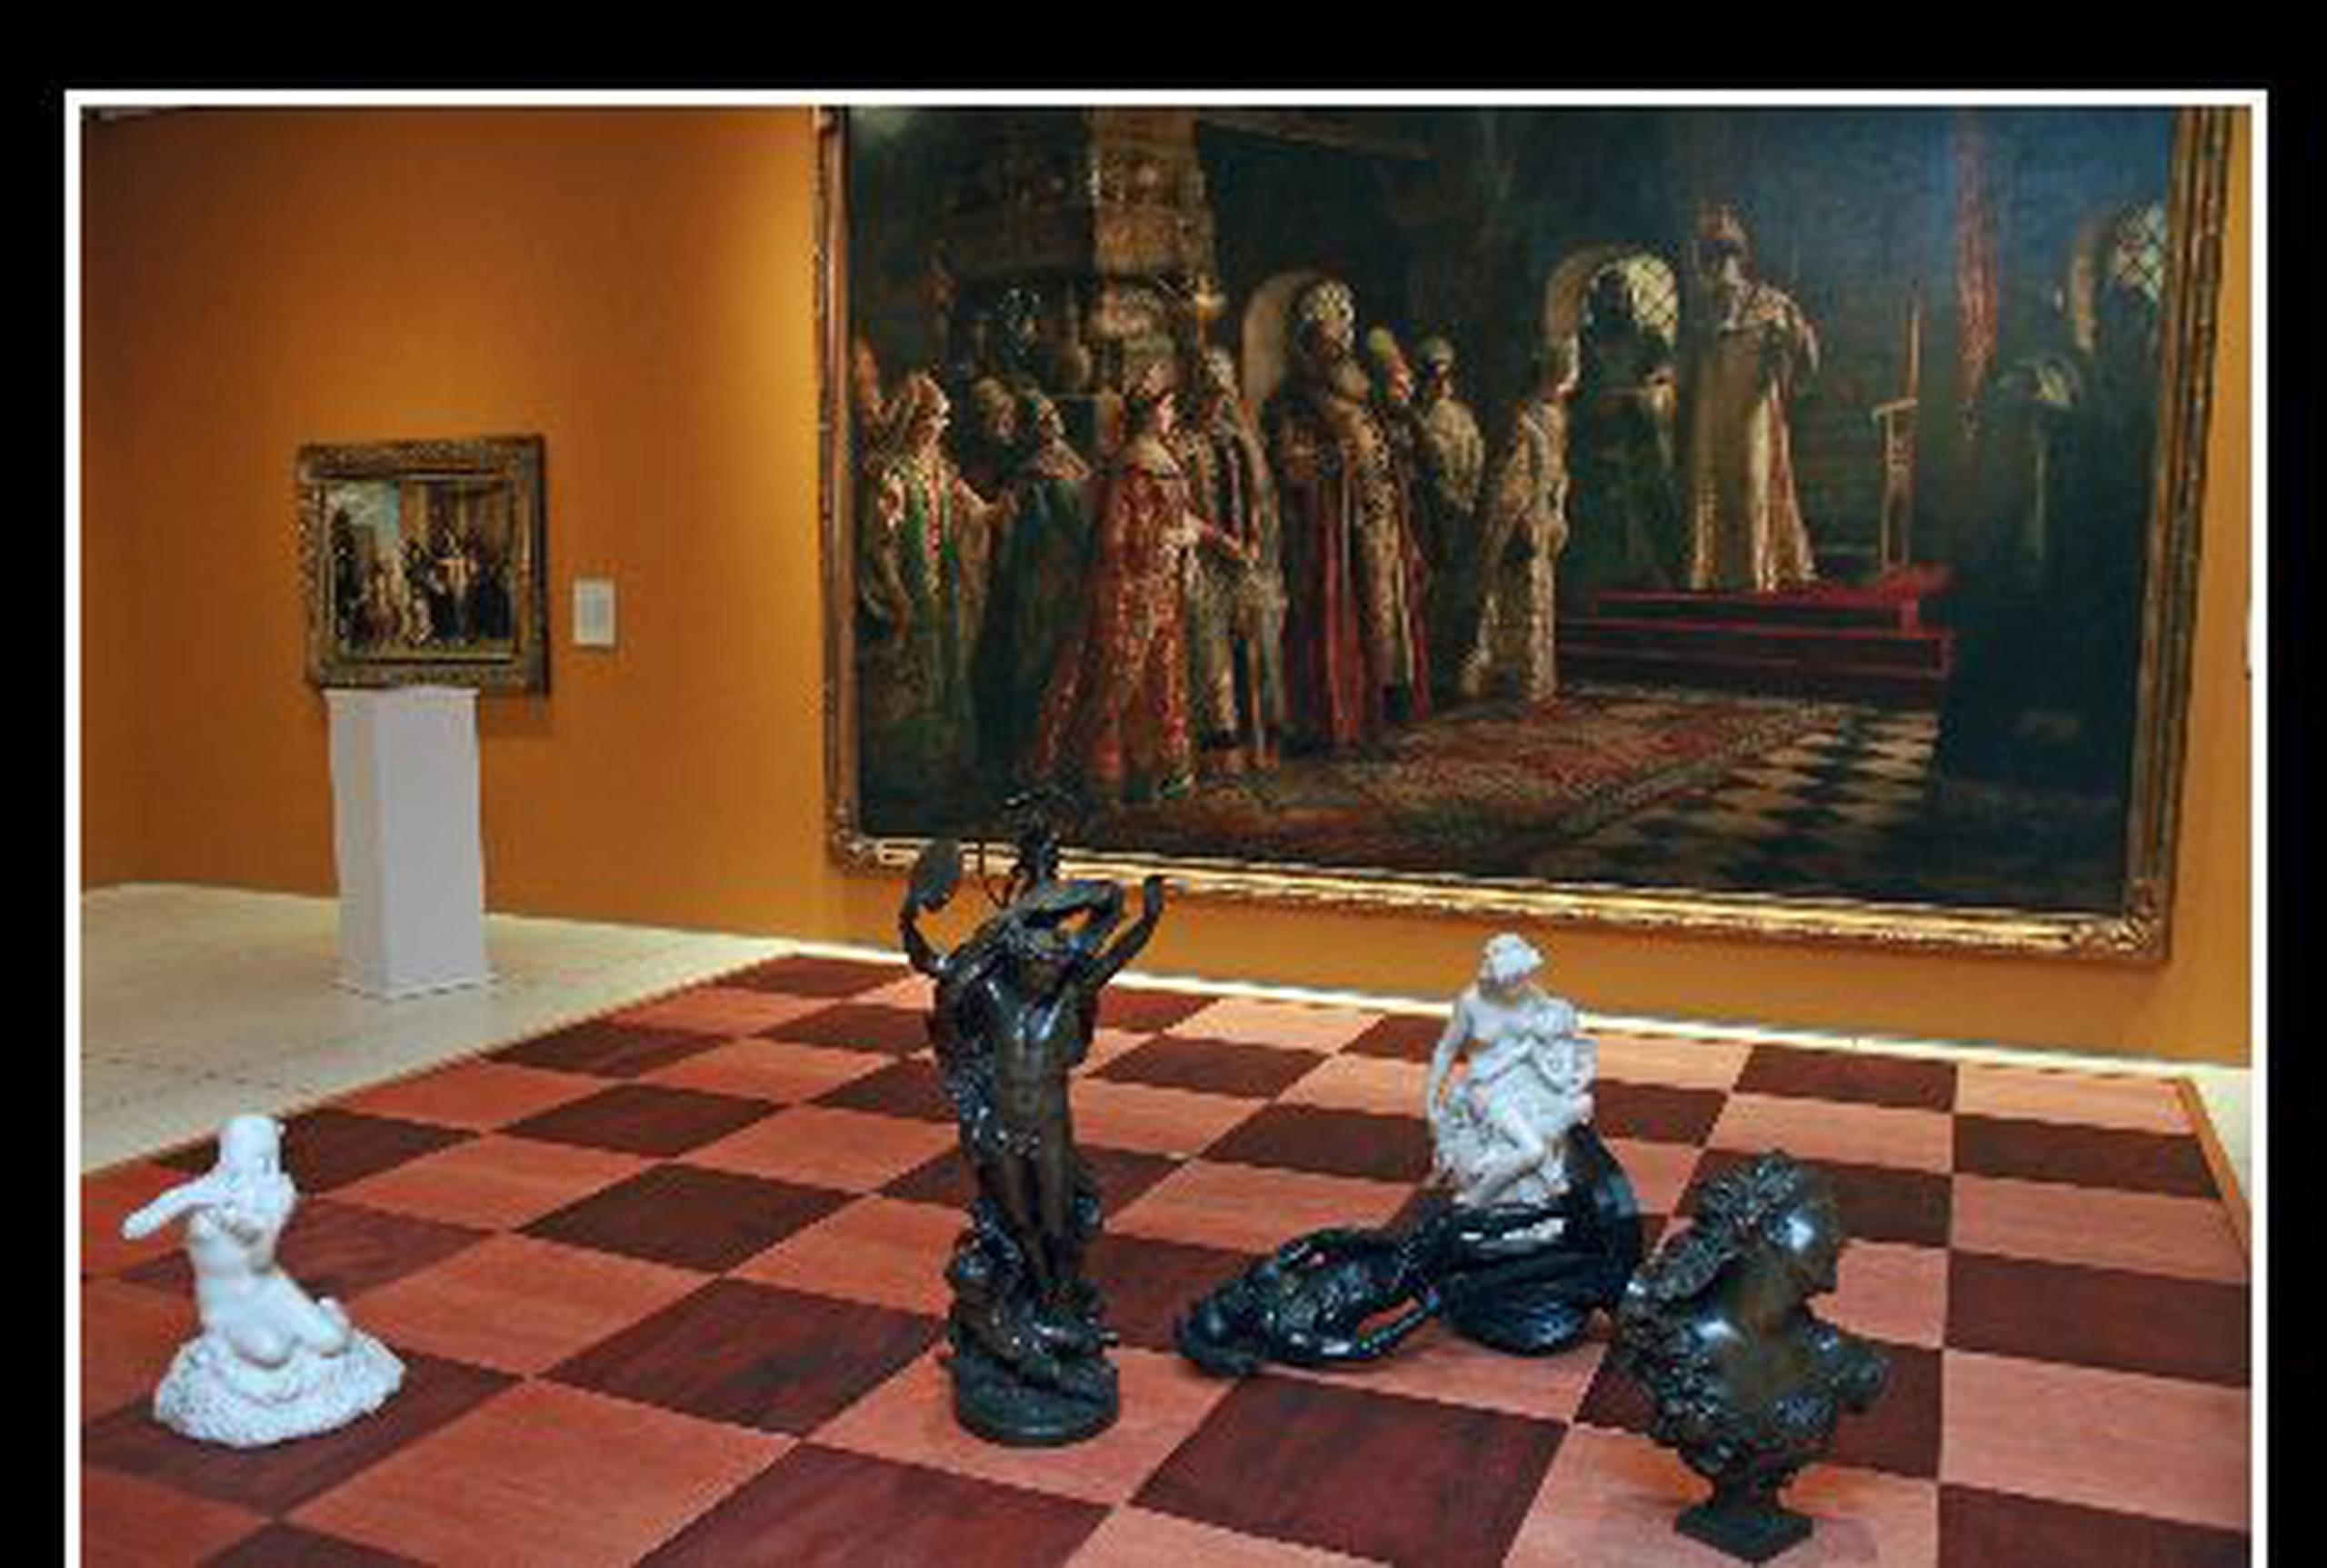 Camnitzer creó un tablero de ajedrez inspirado en la obra Escogiendo la novia de Konstantin Makovsky, que forma parte de la colección permanente del Museo. <font color="yellow">(Suministrada)</font>